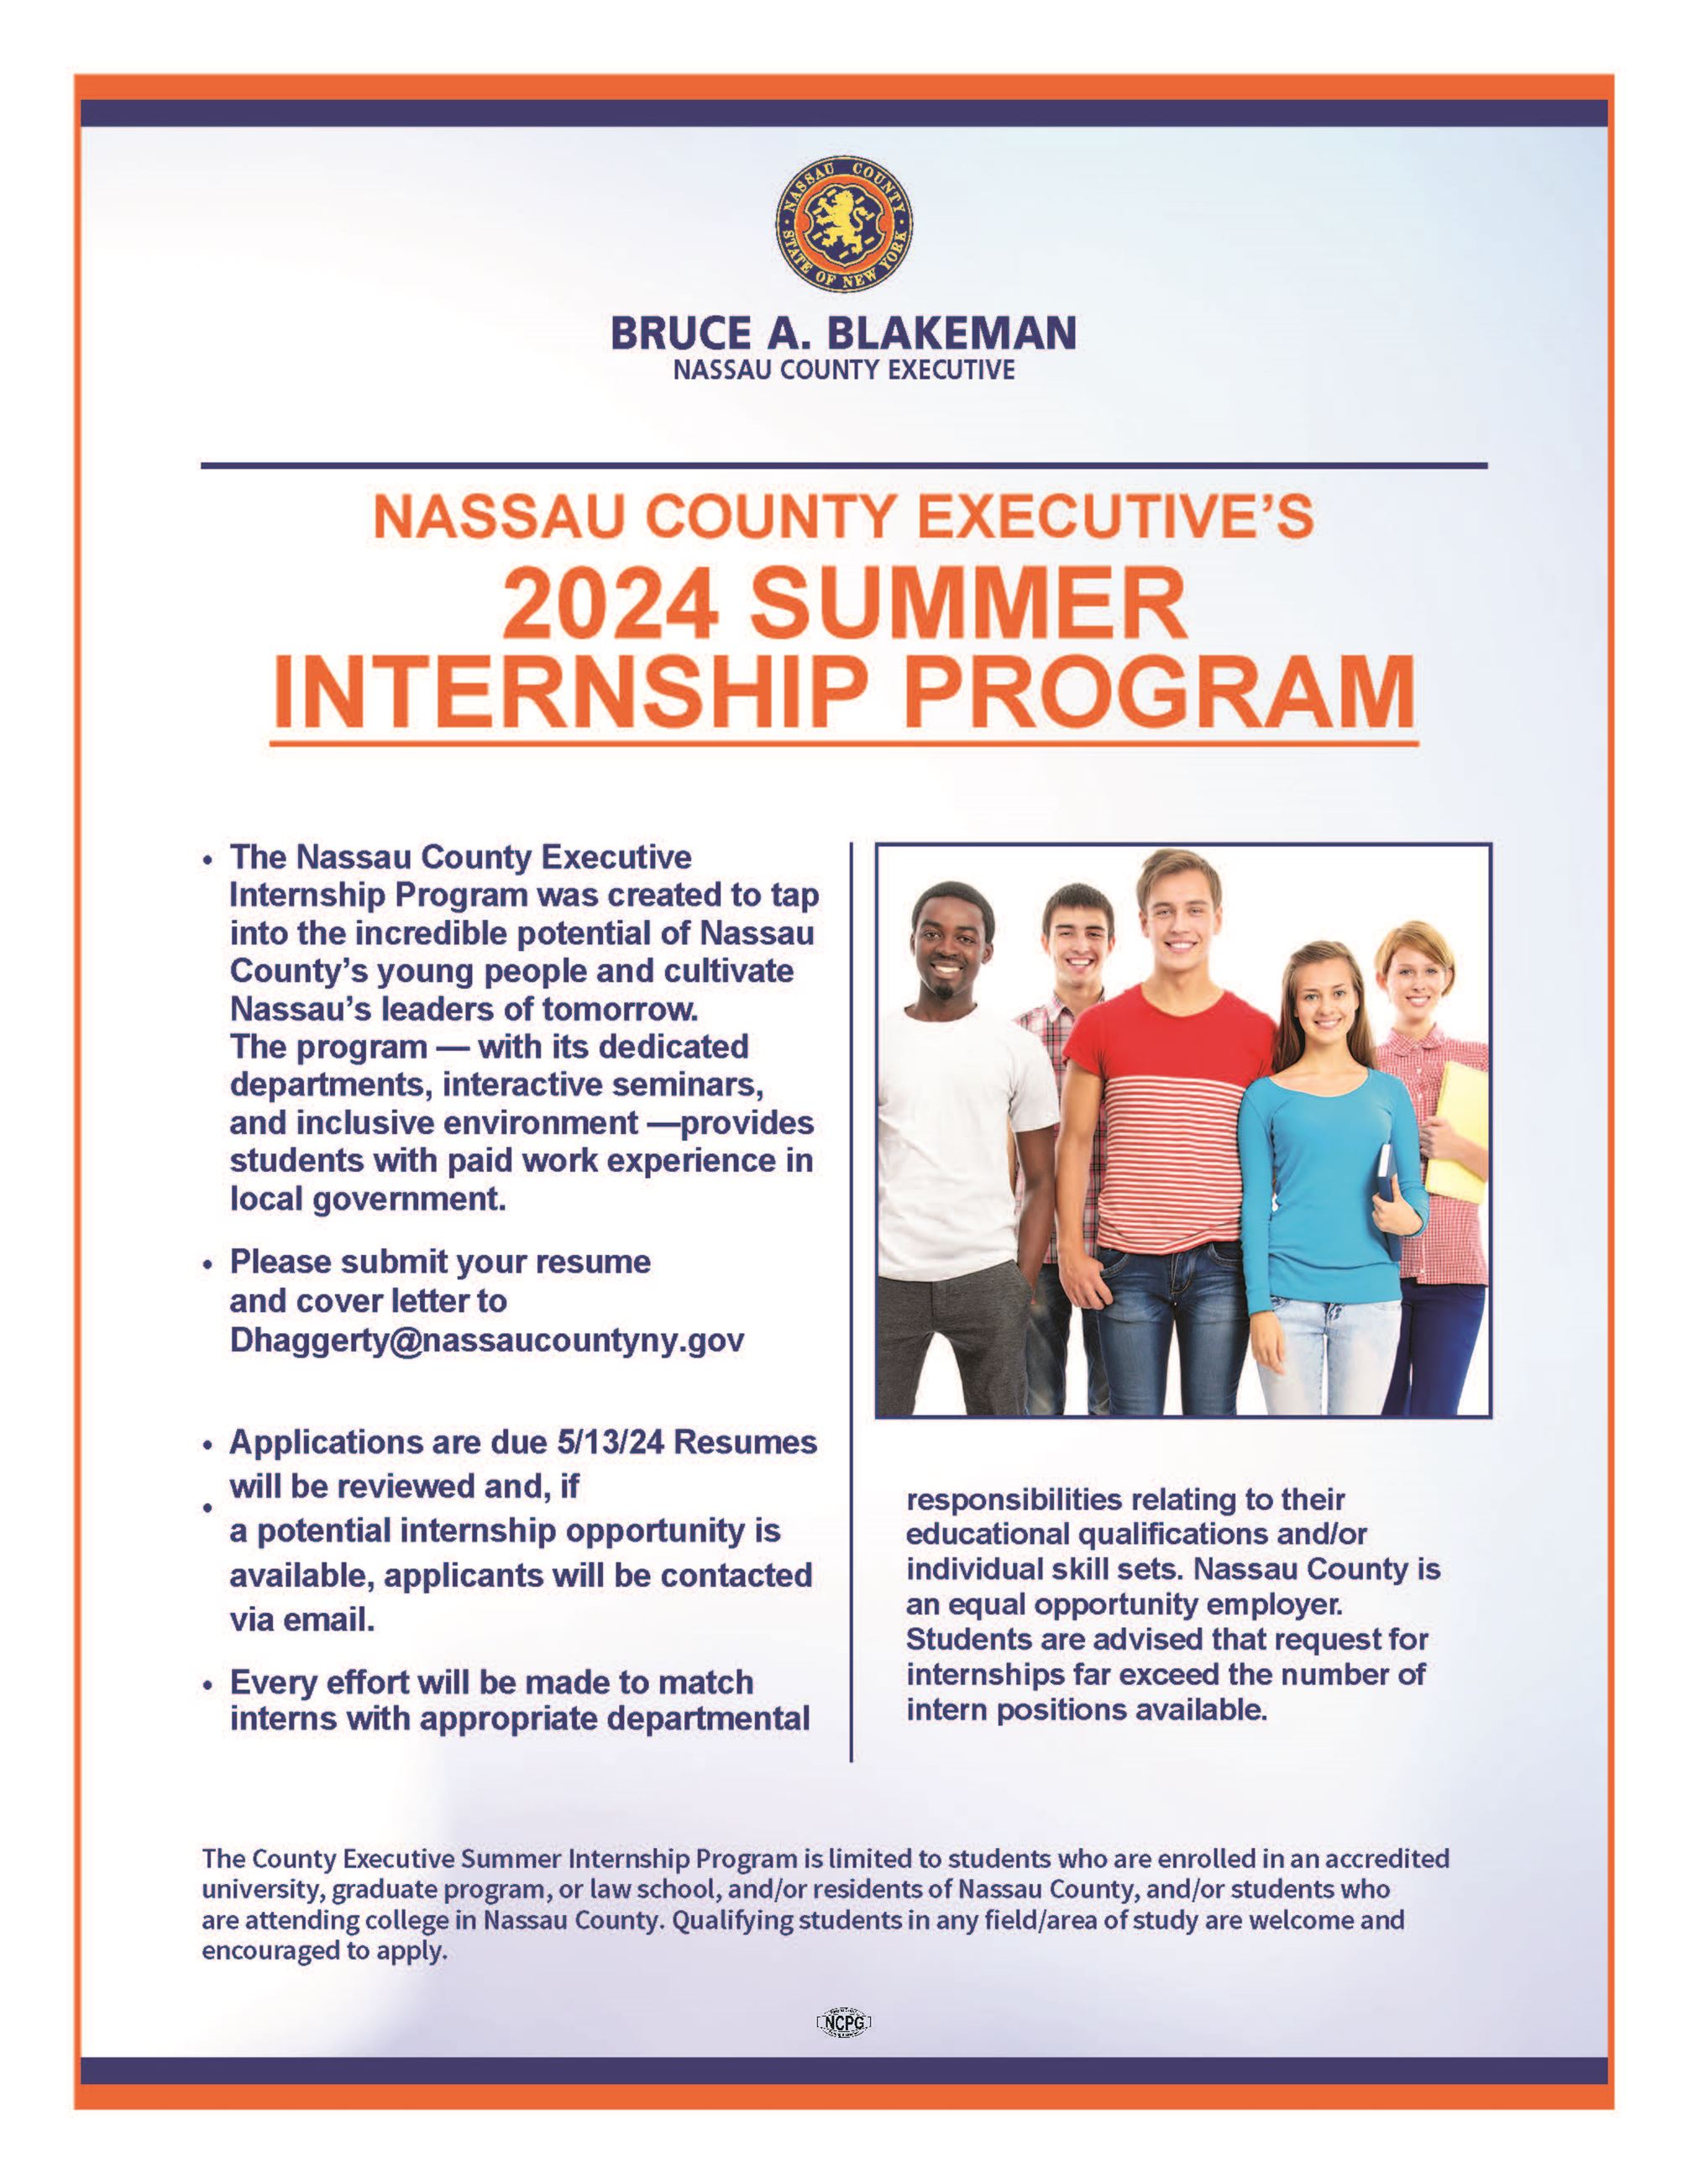 Internship Program Flyer v2 2022 8.5 x 11